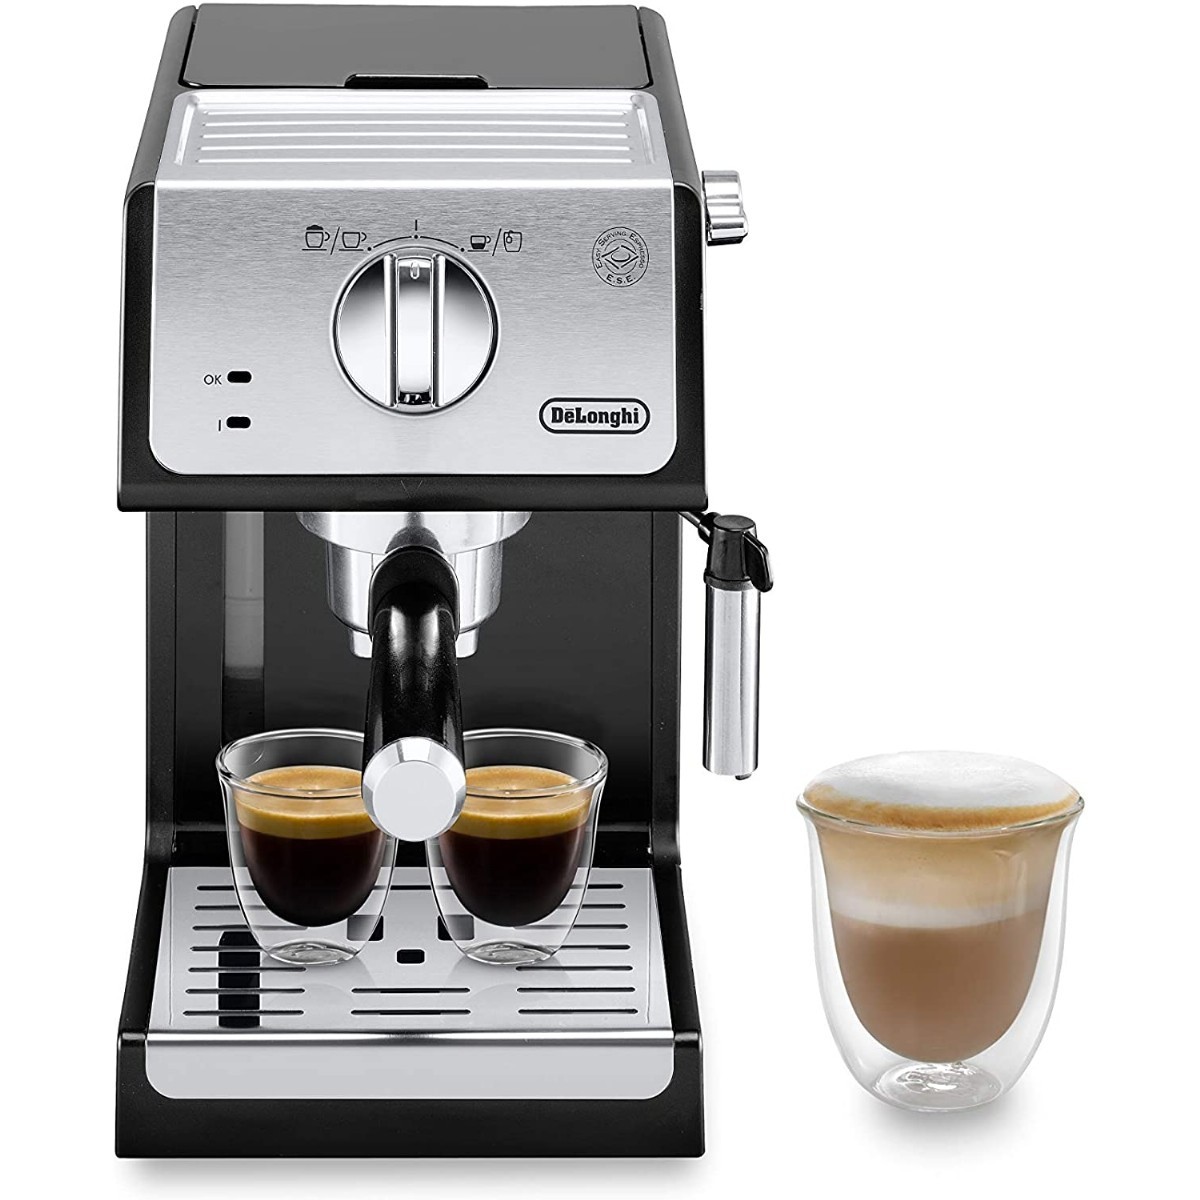 Espresso & Cappuccino Makinesi | Delonghi Activeline ECP33.21.BK Espresso ve Cappucino Makinesi | ECP 33.21.BK | Delonghi Actıvelıne ECP33.21.BK Espresso ve Cappucino Makinesi | 